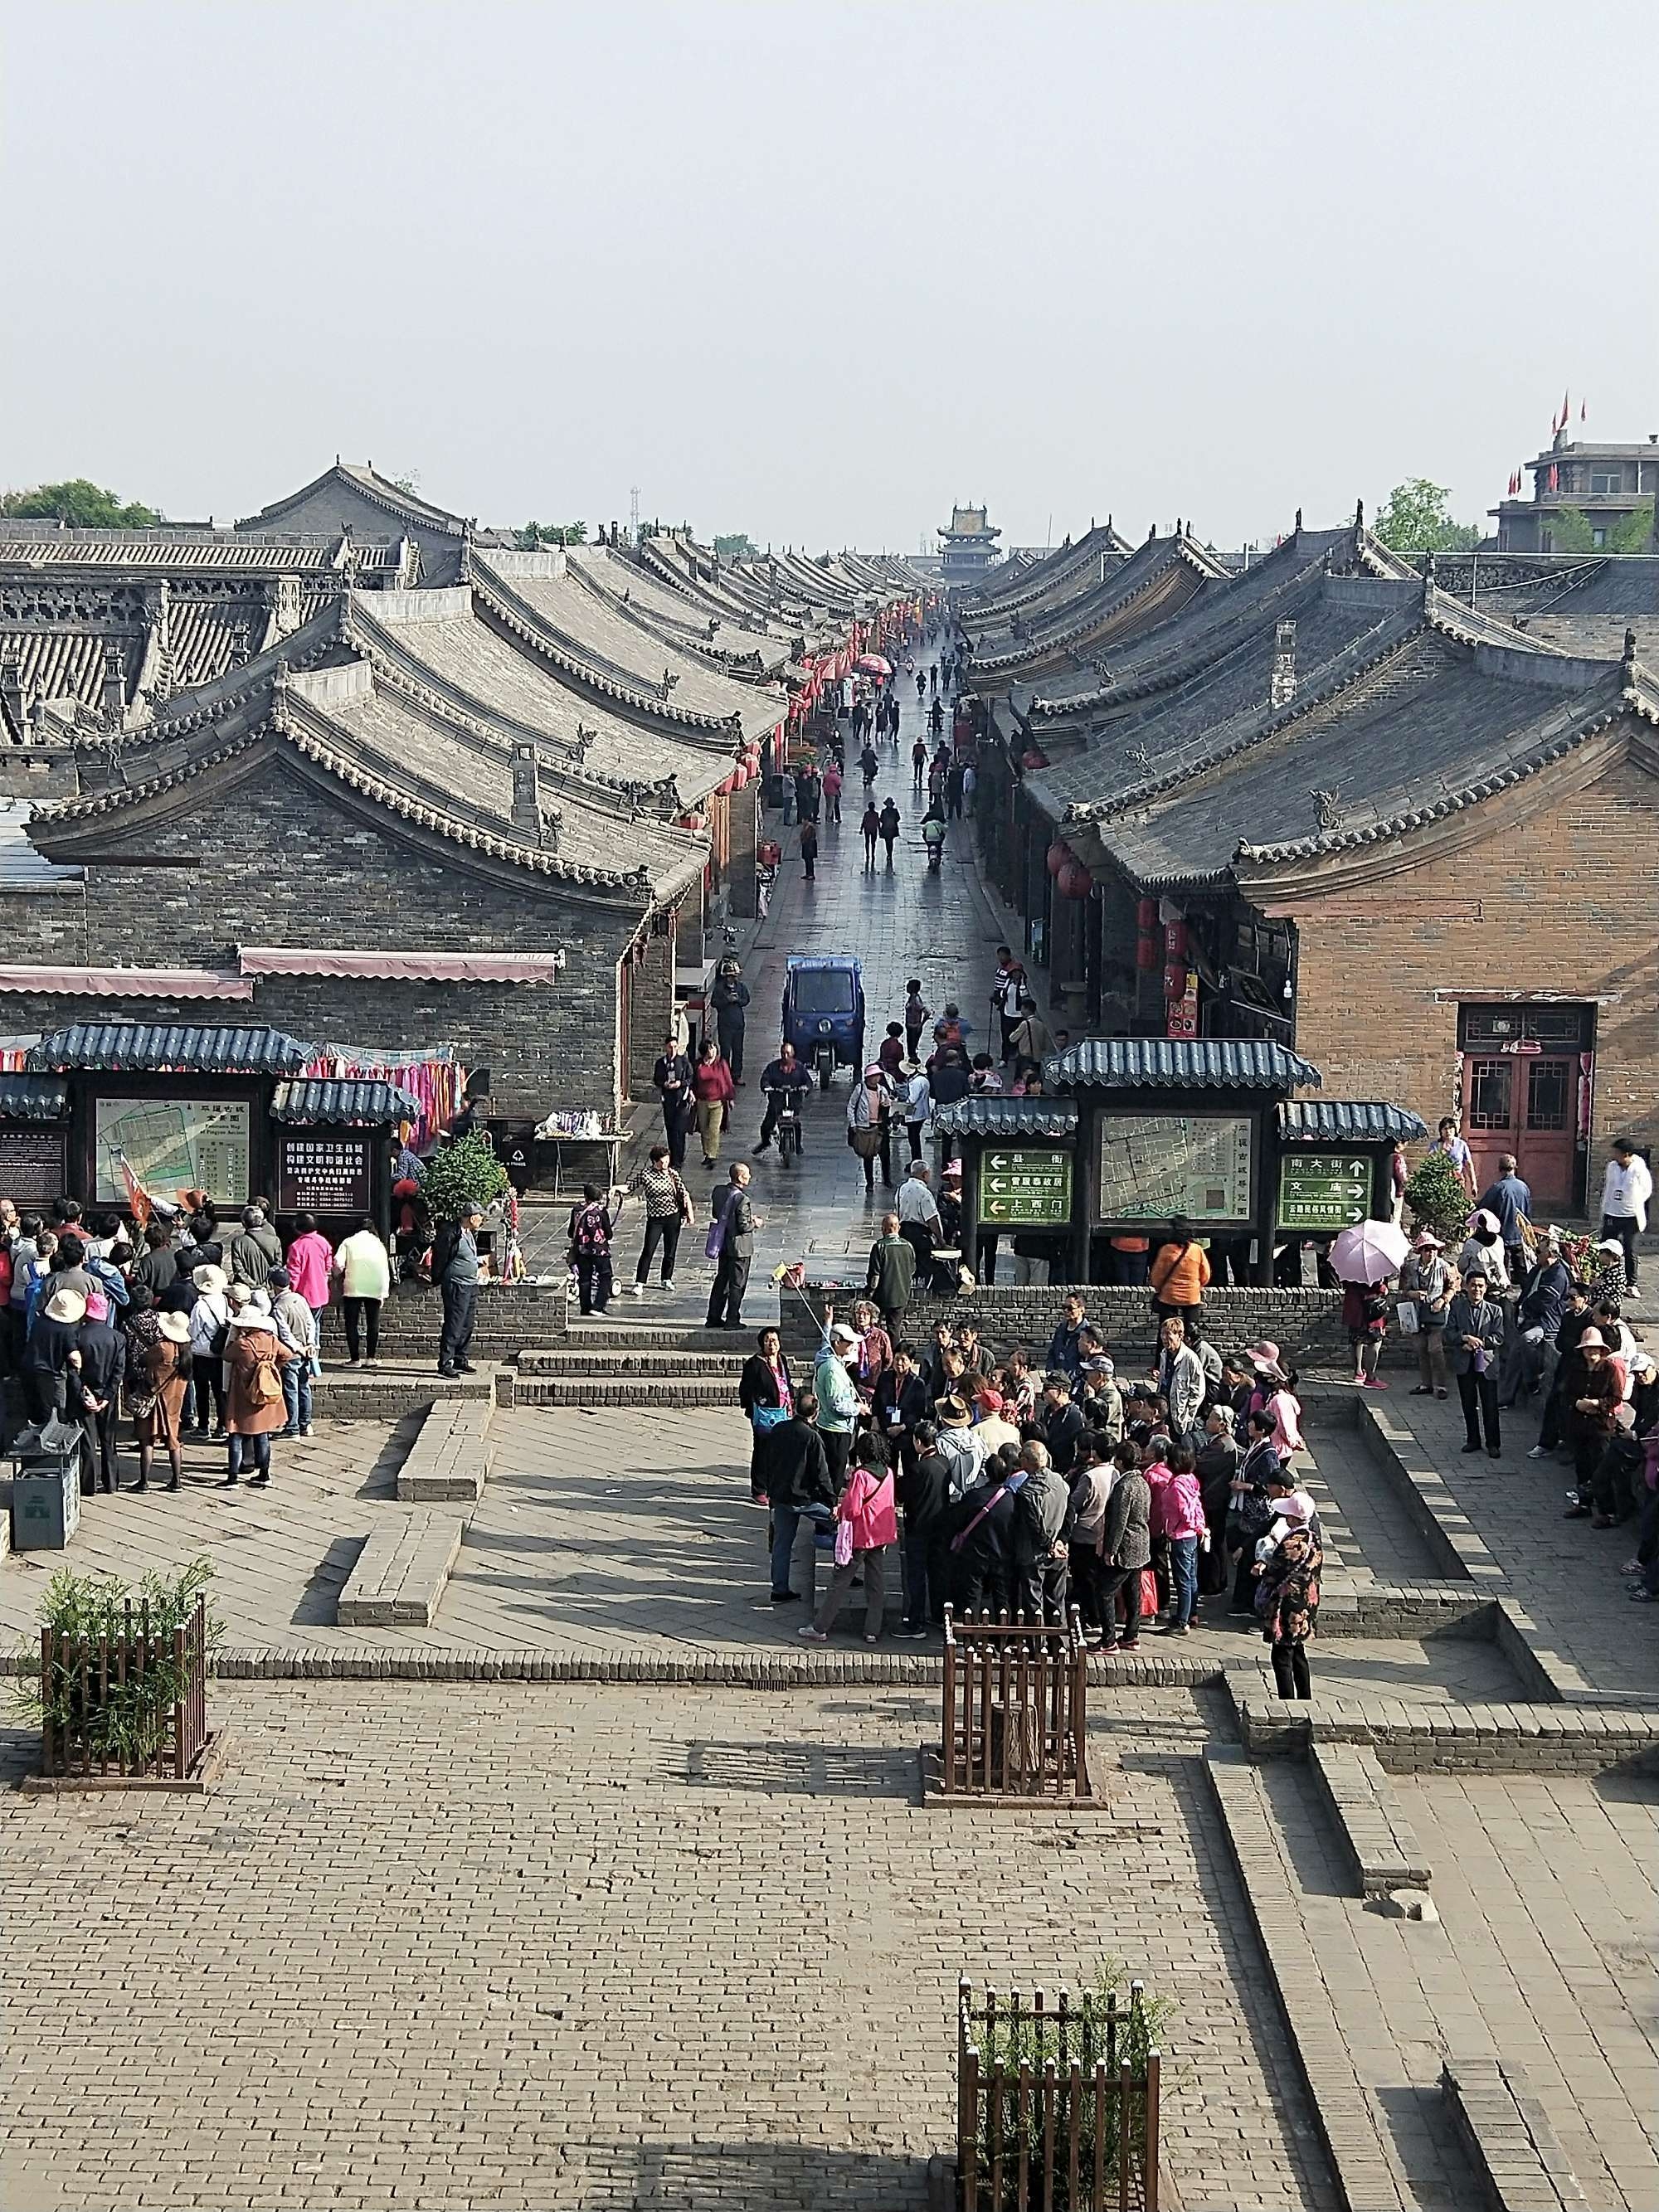 2009年,平遥古城被世界纪录协会评为中国现存最完整的古代县城.